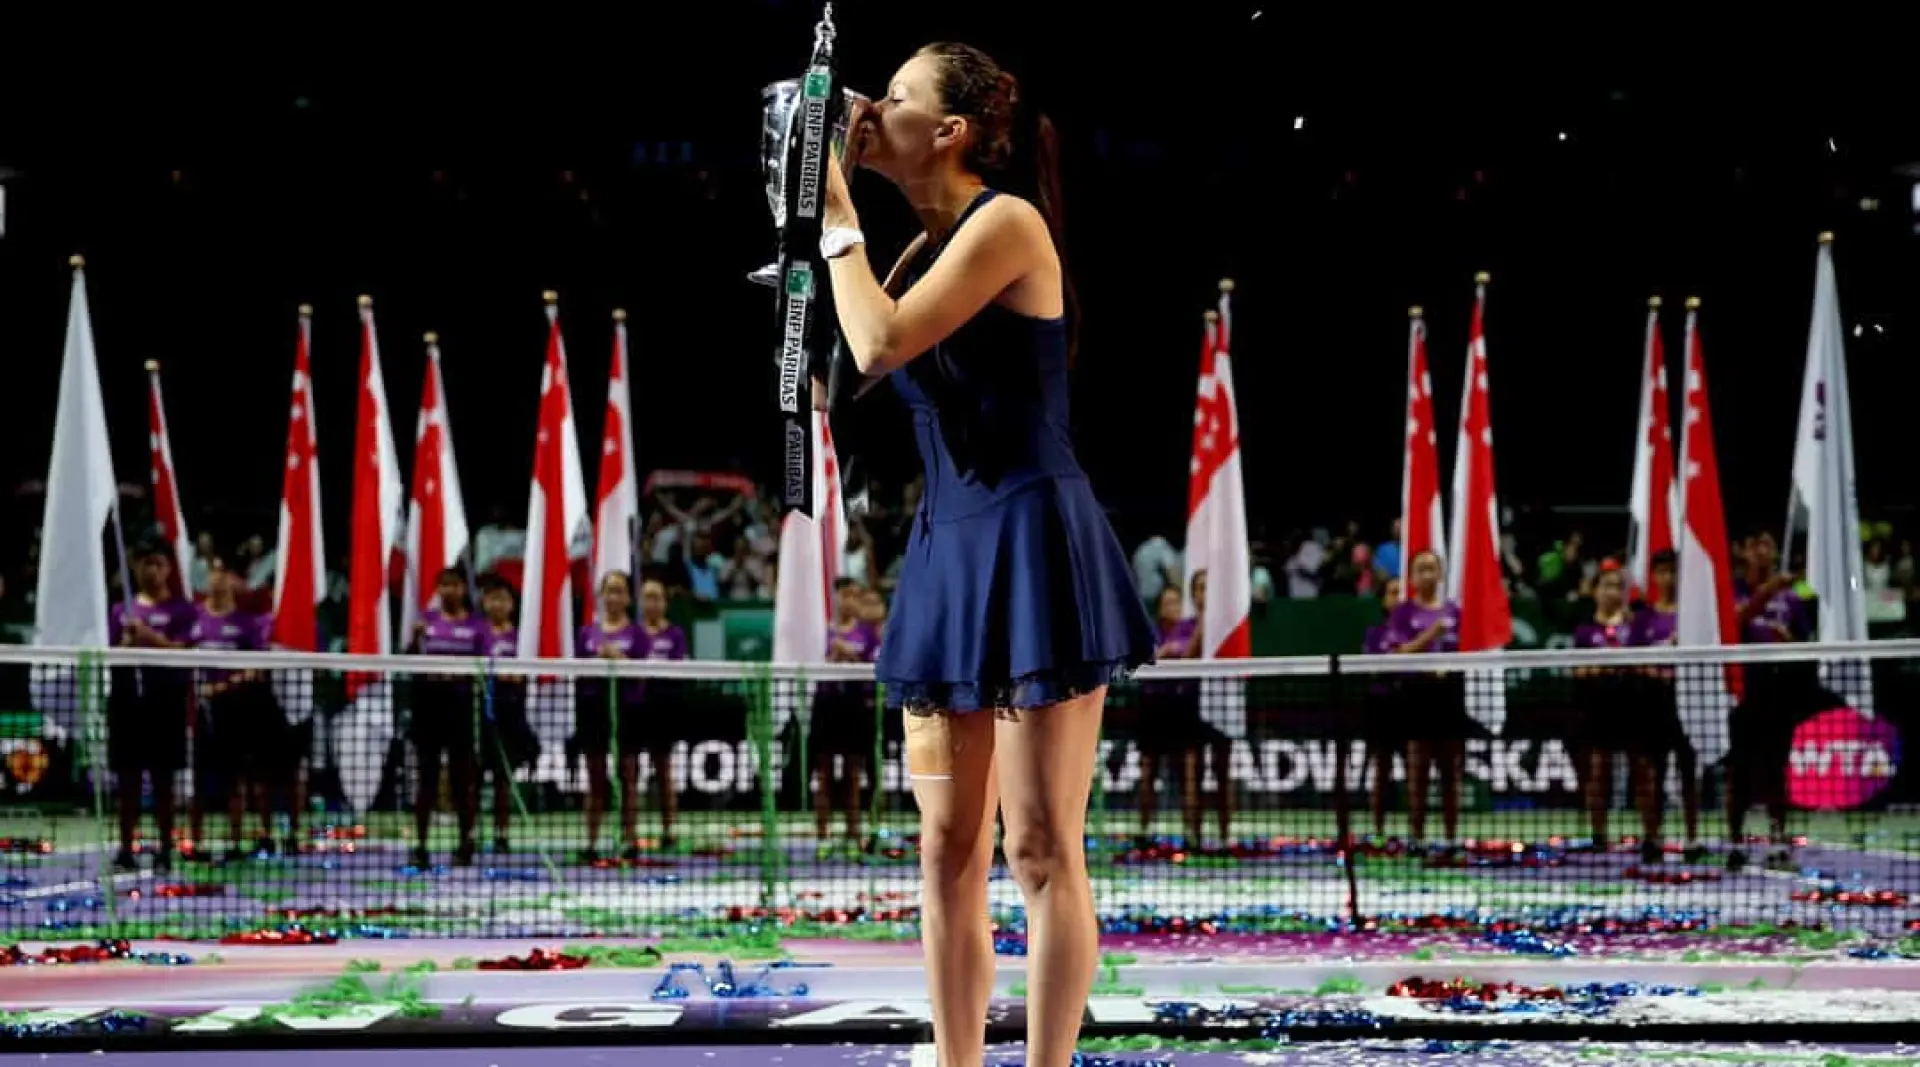 Agnieszka Radwanska celebrates winning the 2015 WTA Finals